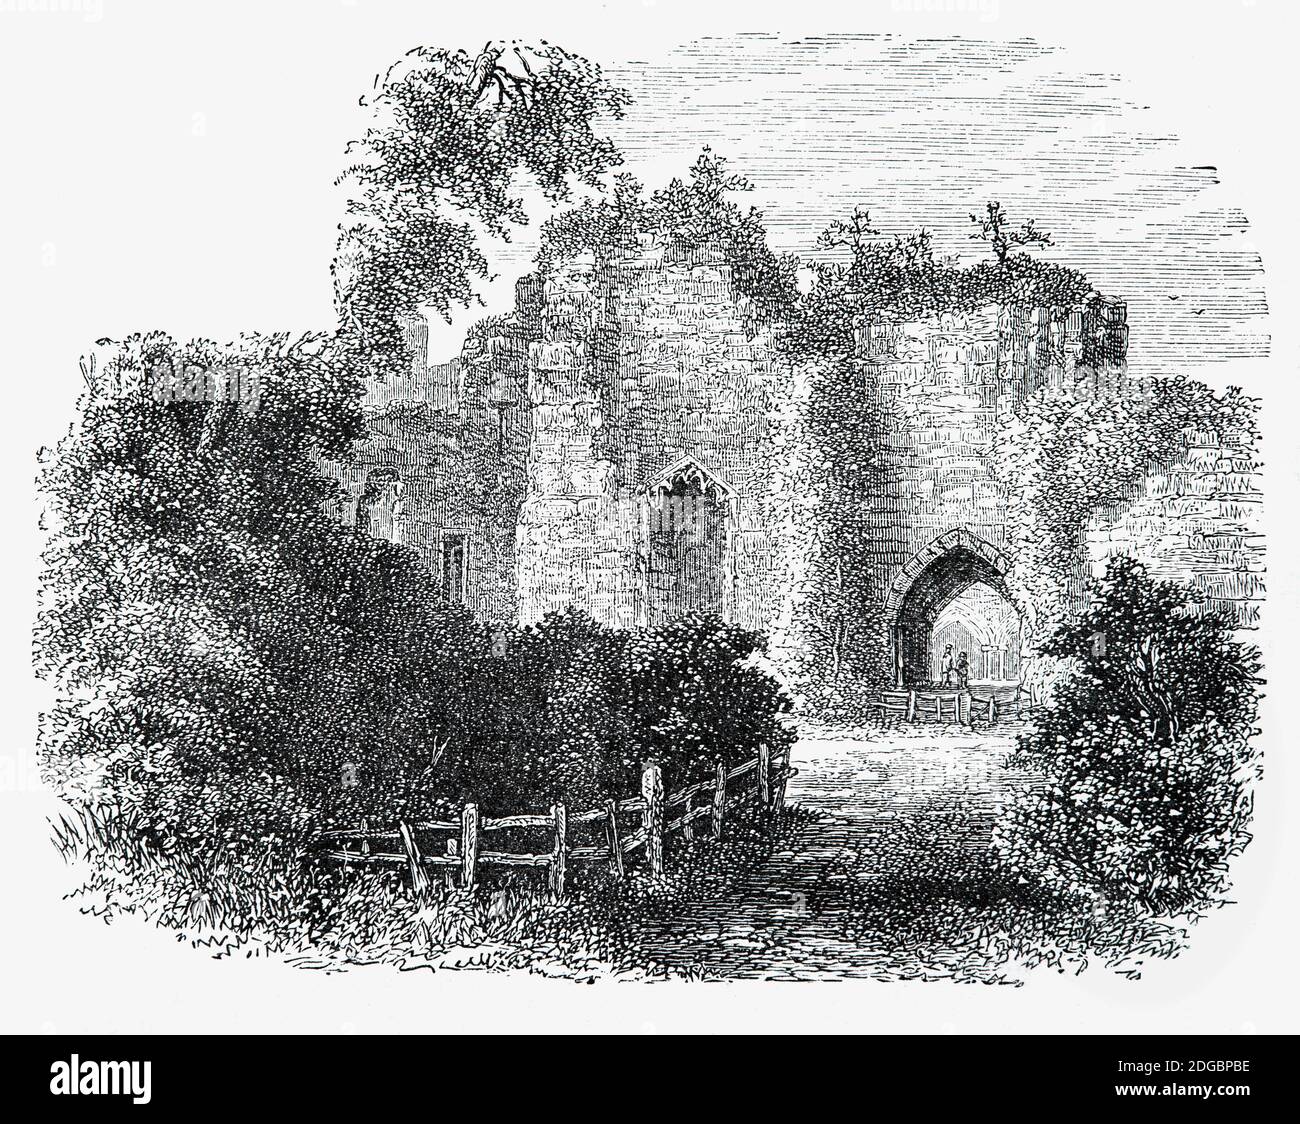 Una vista del 19 ° secolo del Castello di Goodrich, Herefordshire, Inghilterra. Costruito nel 12 ° secolo con un castello di pietra, è stato ampliato durante la fine del 13 ° secolo per combinare quartieri di lusso con ampie difese. Tenuta prima dalle forze parlamentari e poi Royaliste nella guerra civile inglese del 1640, fu infine assediata dal colonnello John Birch nel 1646 con l'aiuto dell'enorme mortaio 'Roaring Meg', che si traduceva nella successiva demolizione del castello. Nel 18 ° secolo, il castello divenne oggetto di dipinti e poesie, fornendo ispirazione per Wordsworth 'Siamo sette'. Foto Stock